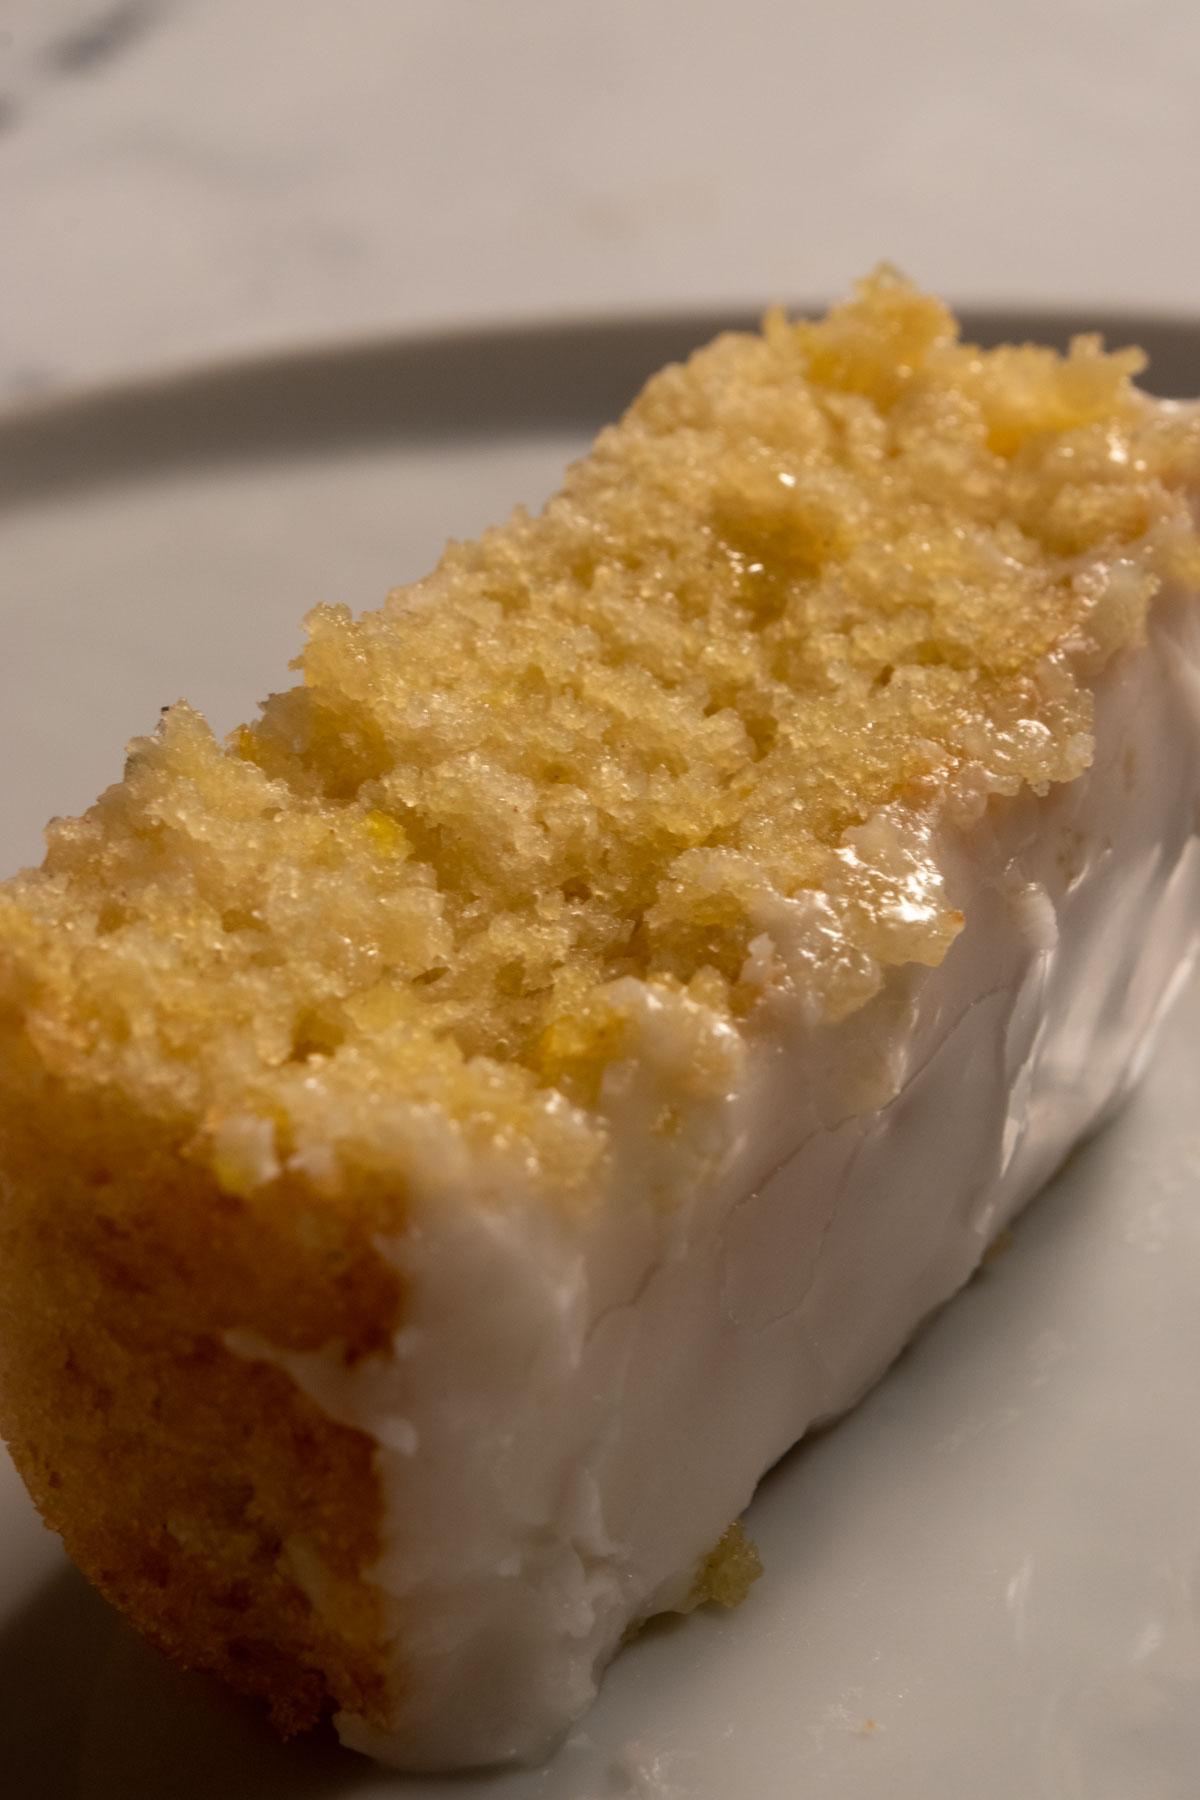 An image of a chunky slice of lemon cake on a shiny, white plate. 